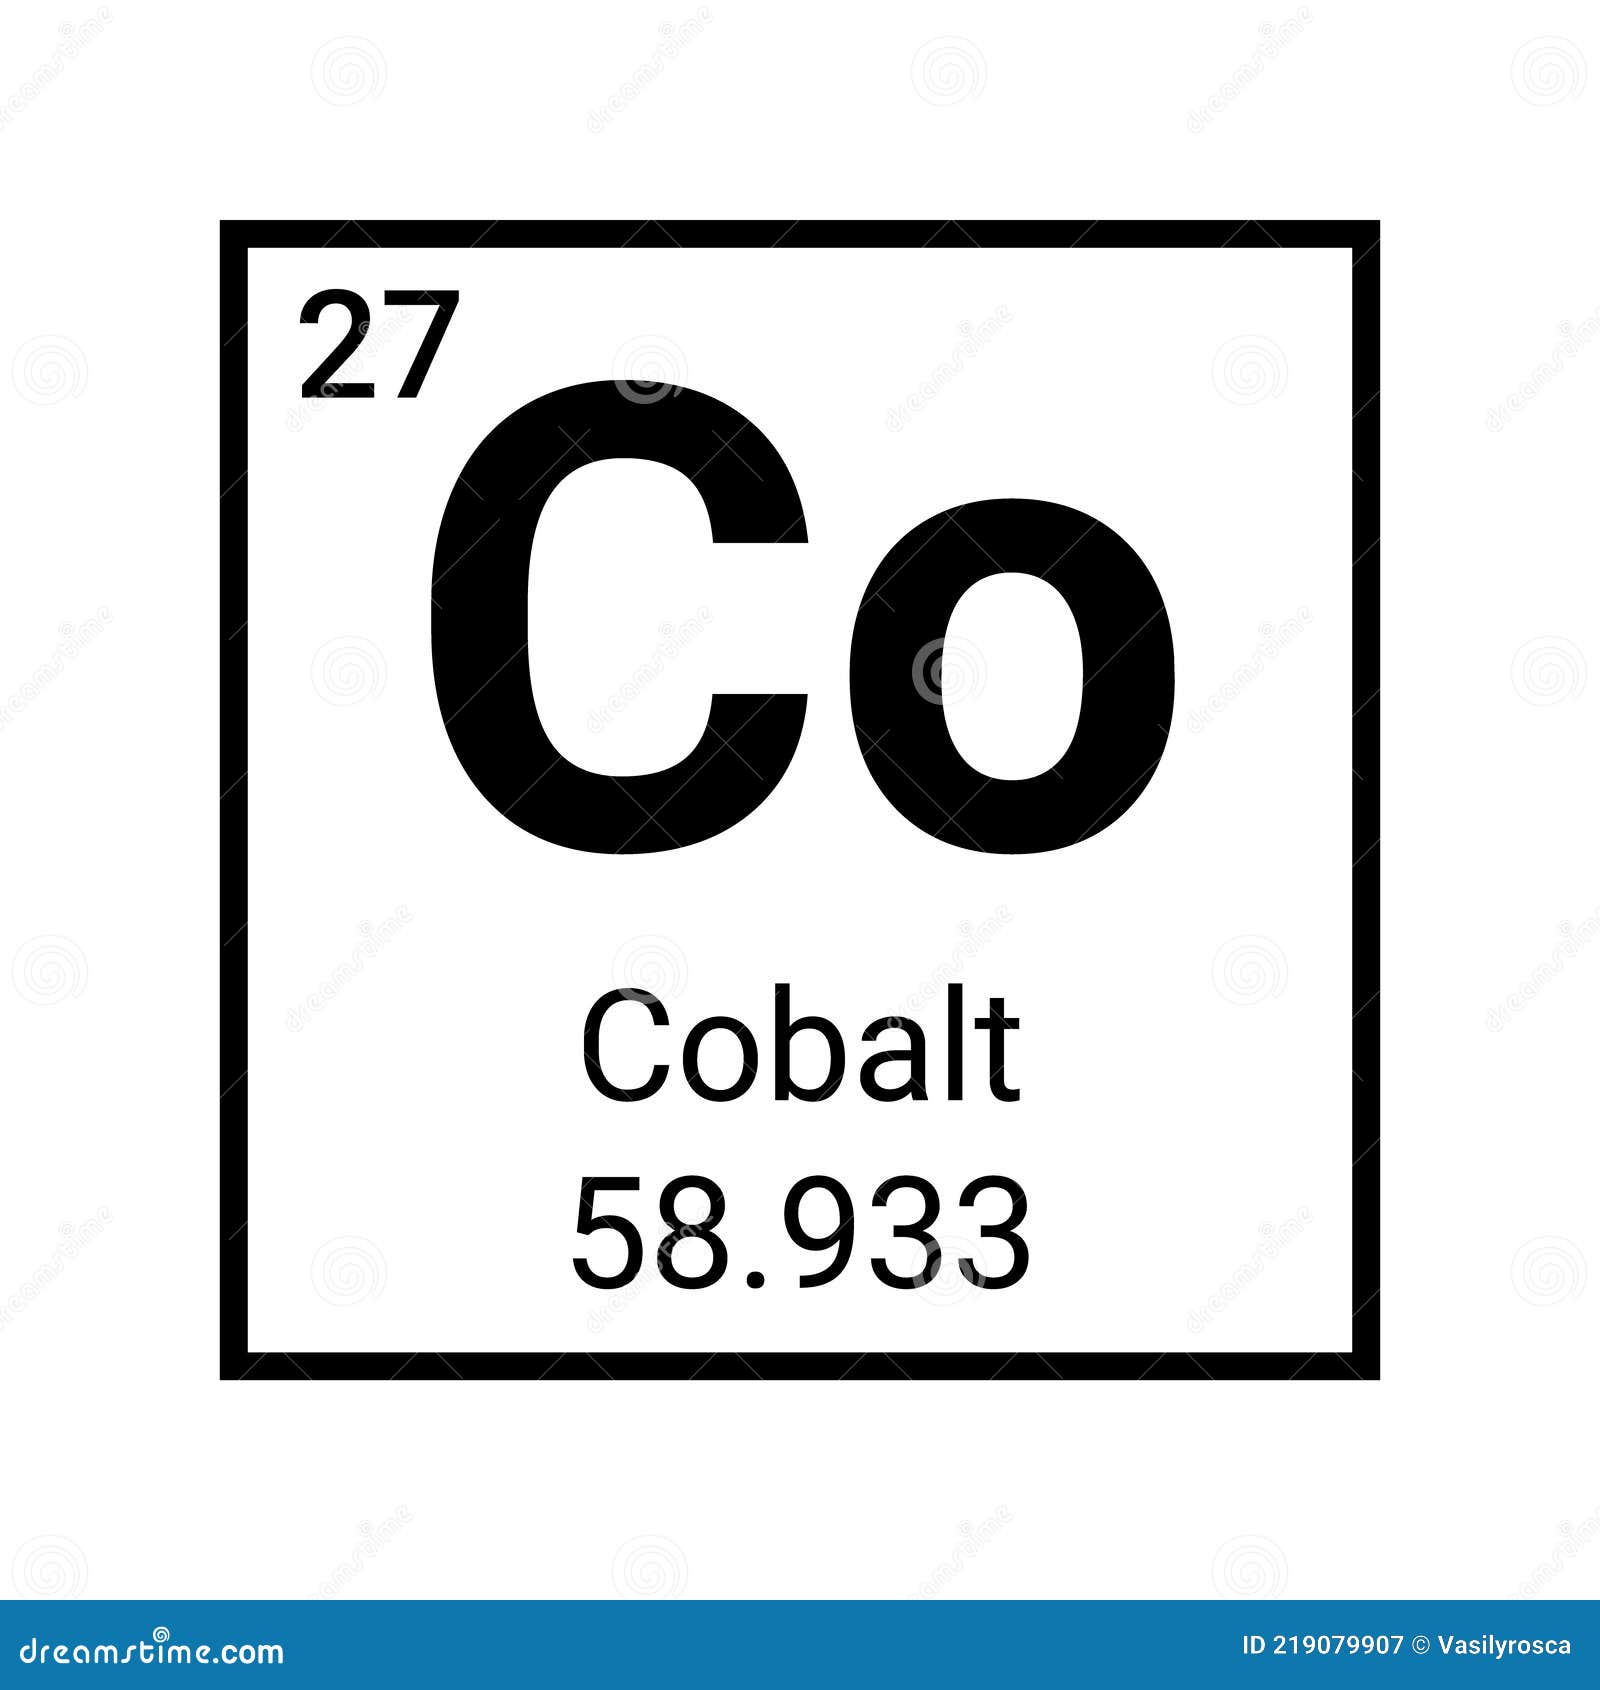 Os Elementos Químicos - Cobalto 